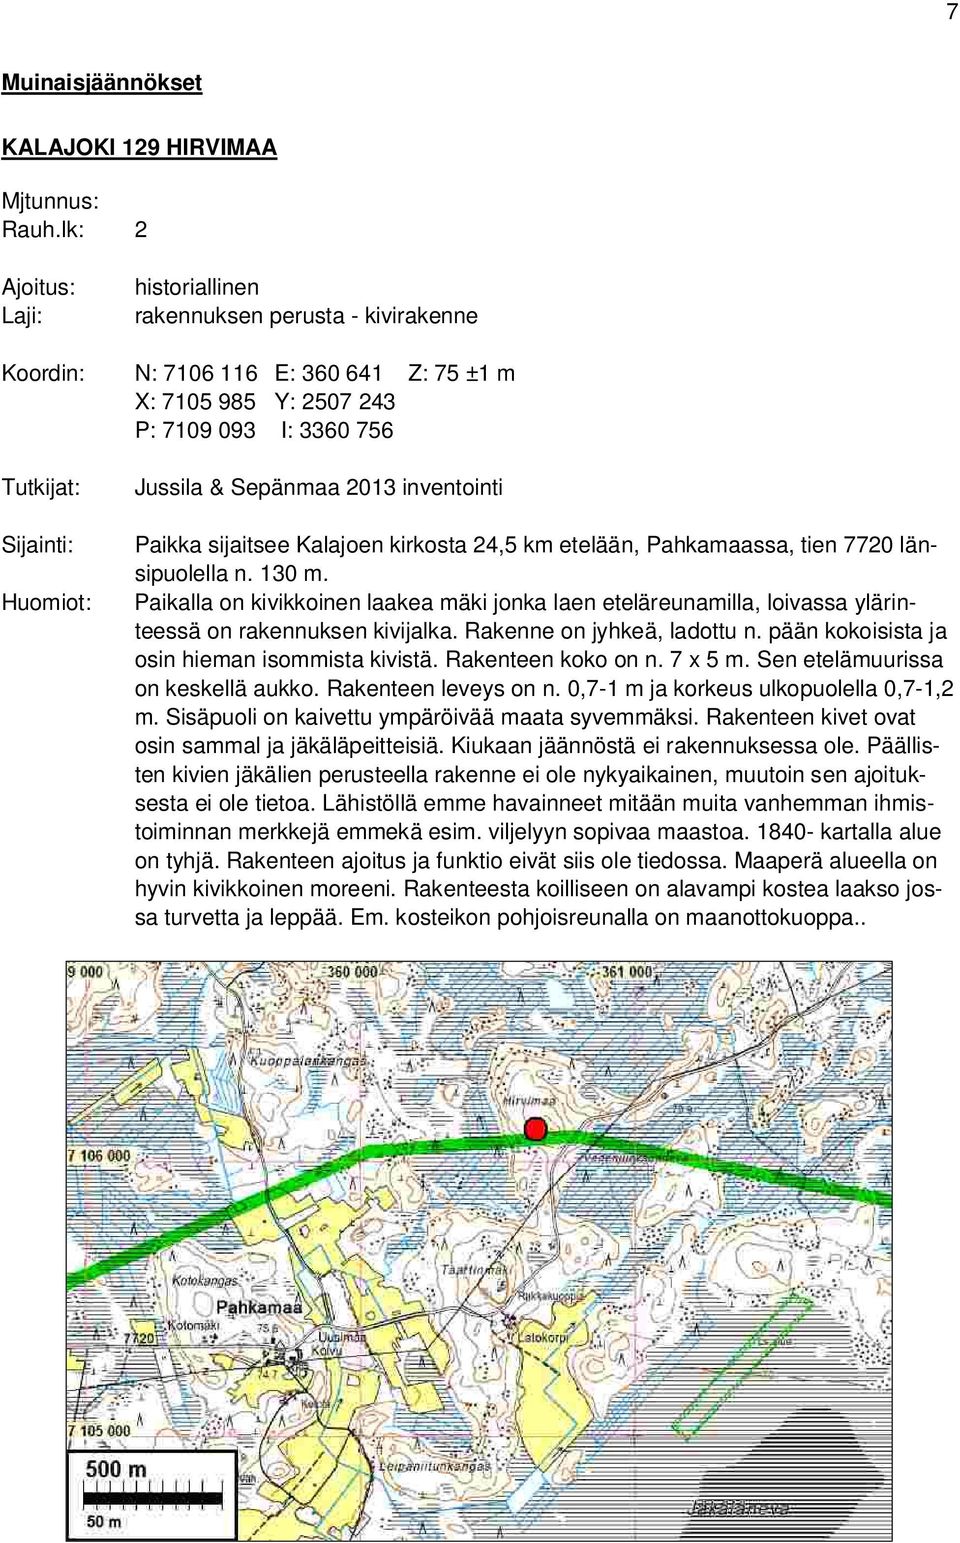 Sepänmaa 2013 inventointi Paikka sijaitsee Kalajoen kirkosta 24,5 km etelään, Pahkamaassa, tien 7720 länsipuolella n. 130 m.